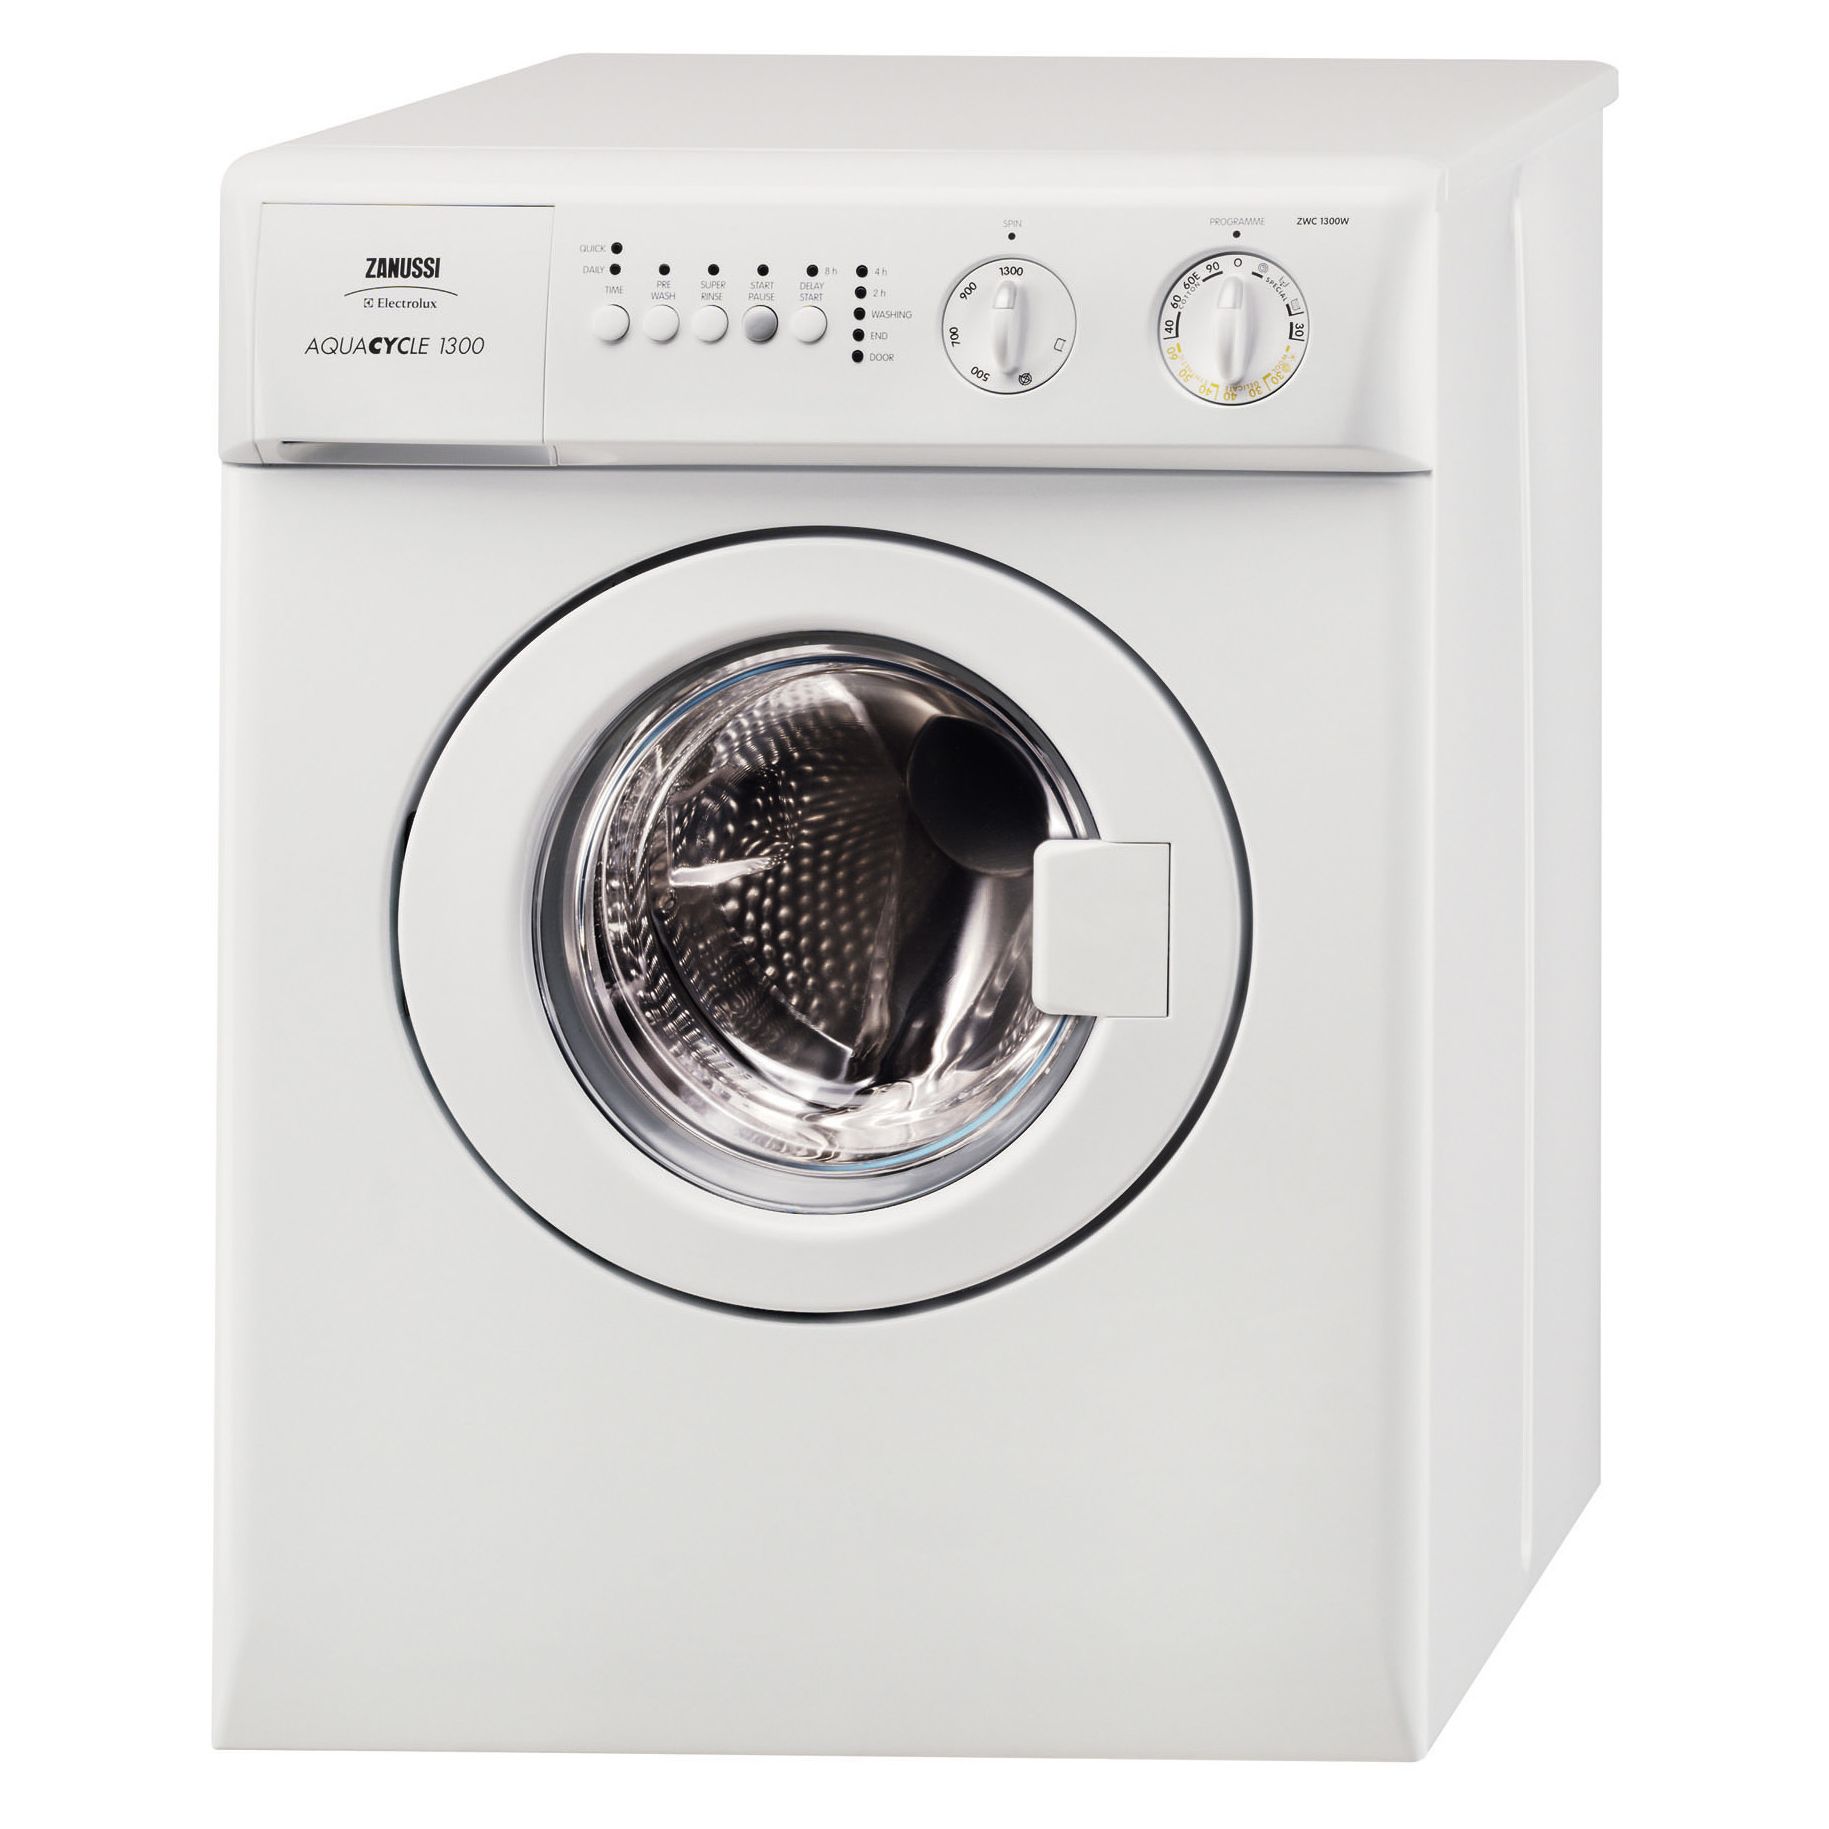 Zanussi ZWC1300W Compact Studio Washing Machine, White at JohnLewis